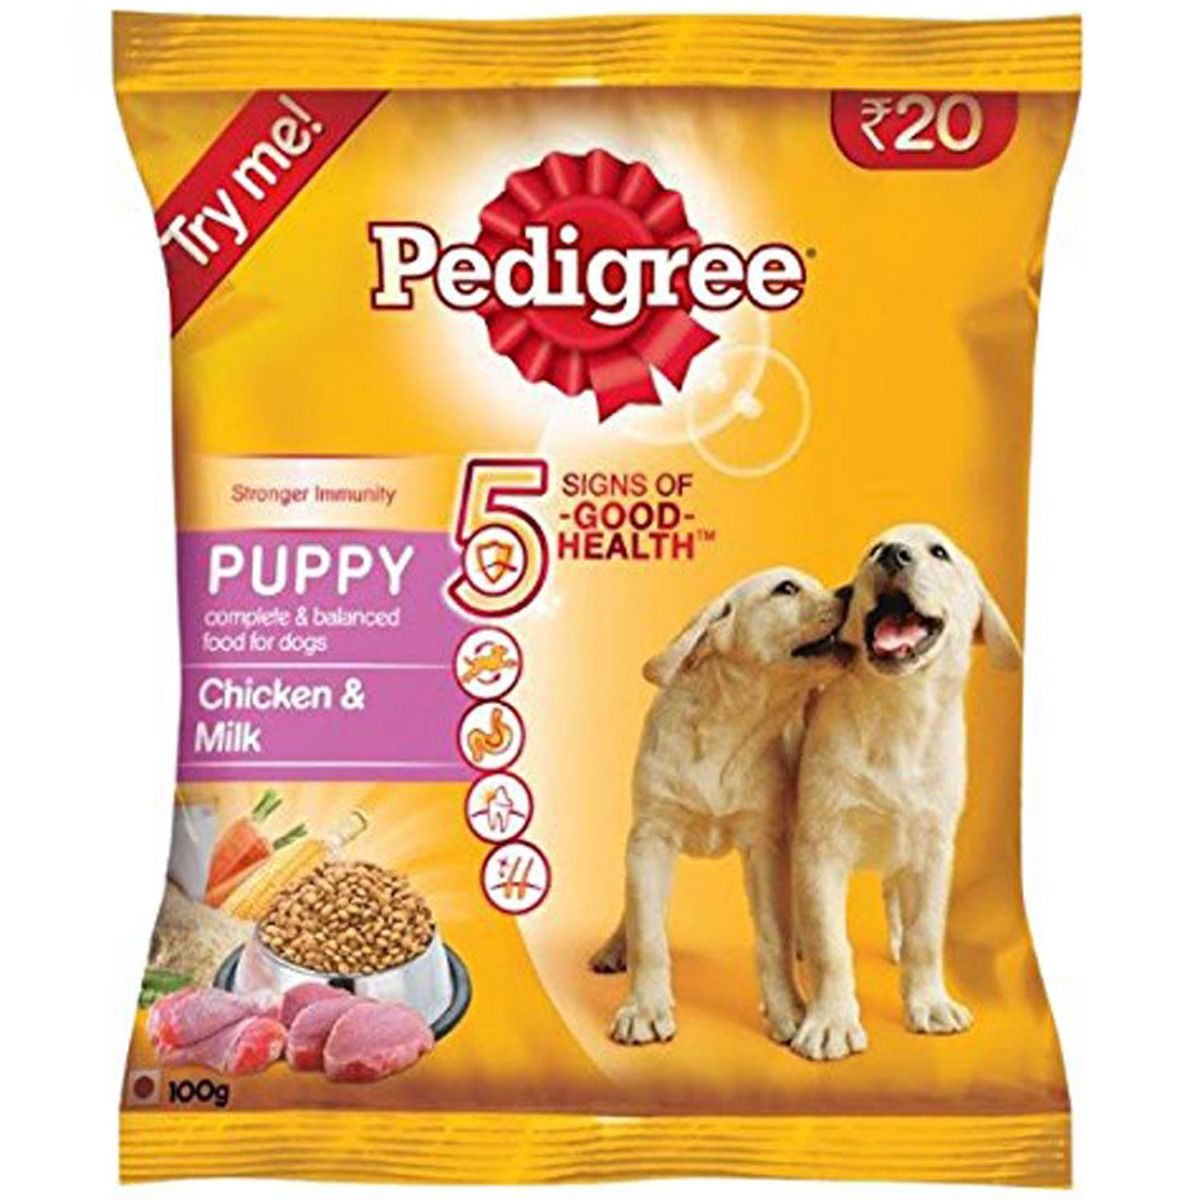 Pedigree Puppy Chicken & Milk Dog Food, 100 gm, Pack of 1 